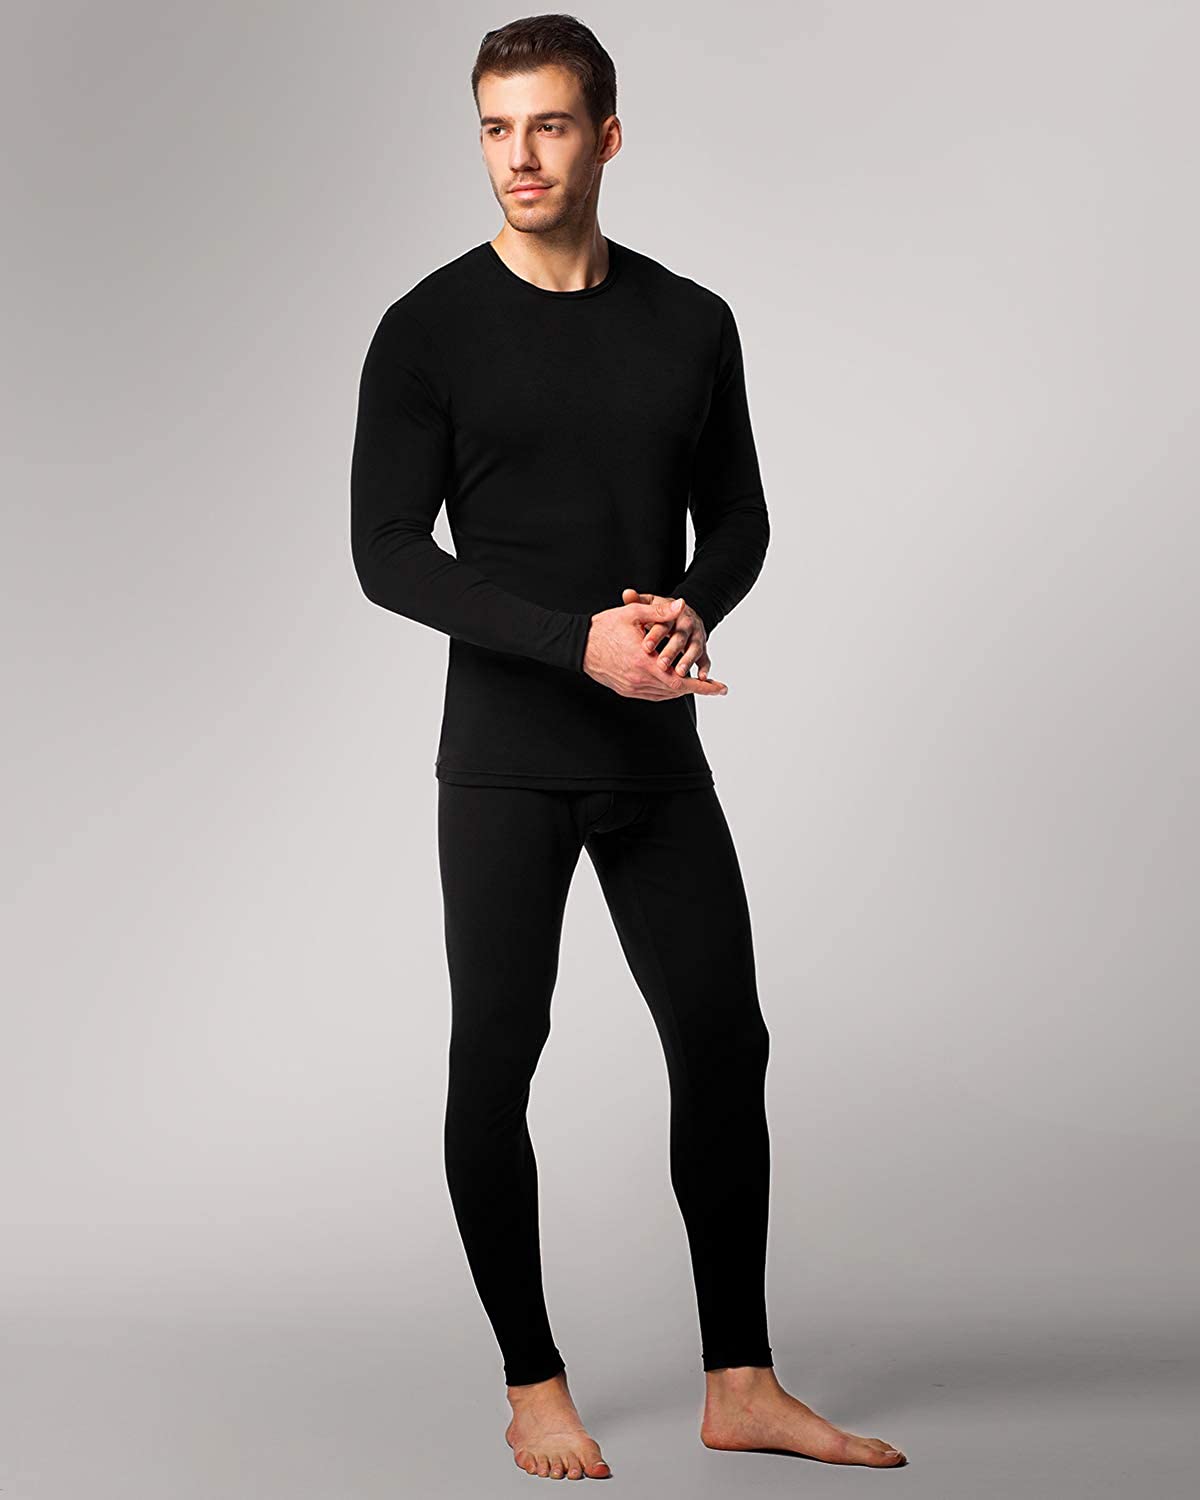 LAPASA Men's Thermal Underwear Set Base Layer Long John Lightweight ...